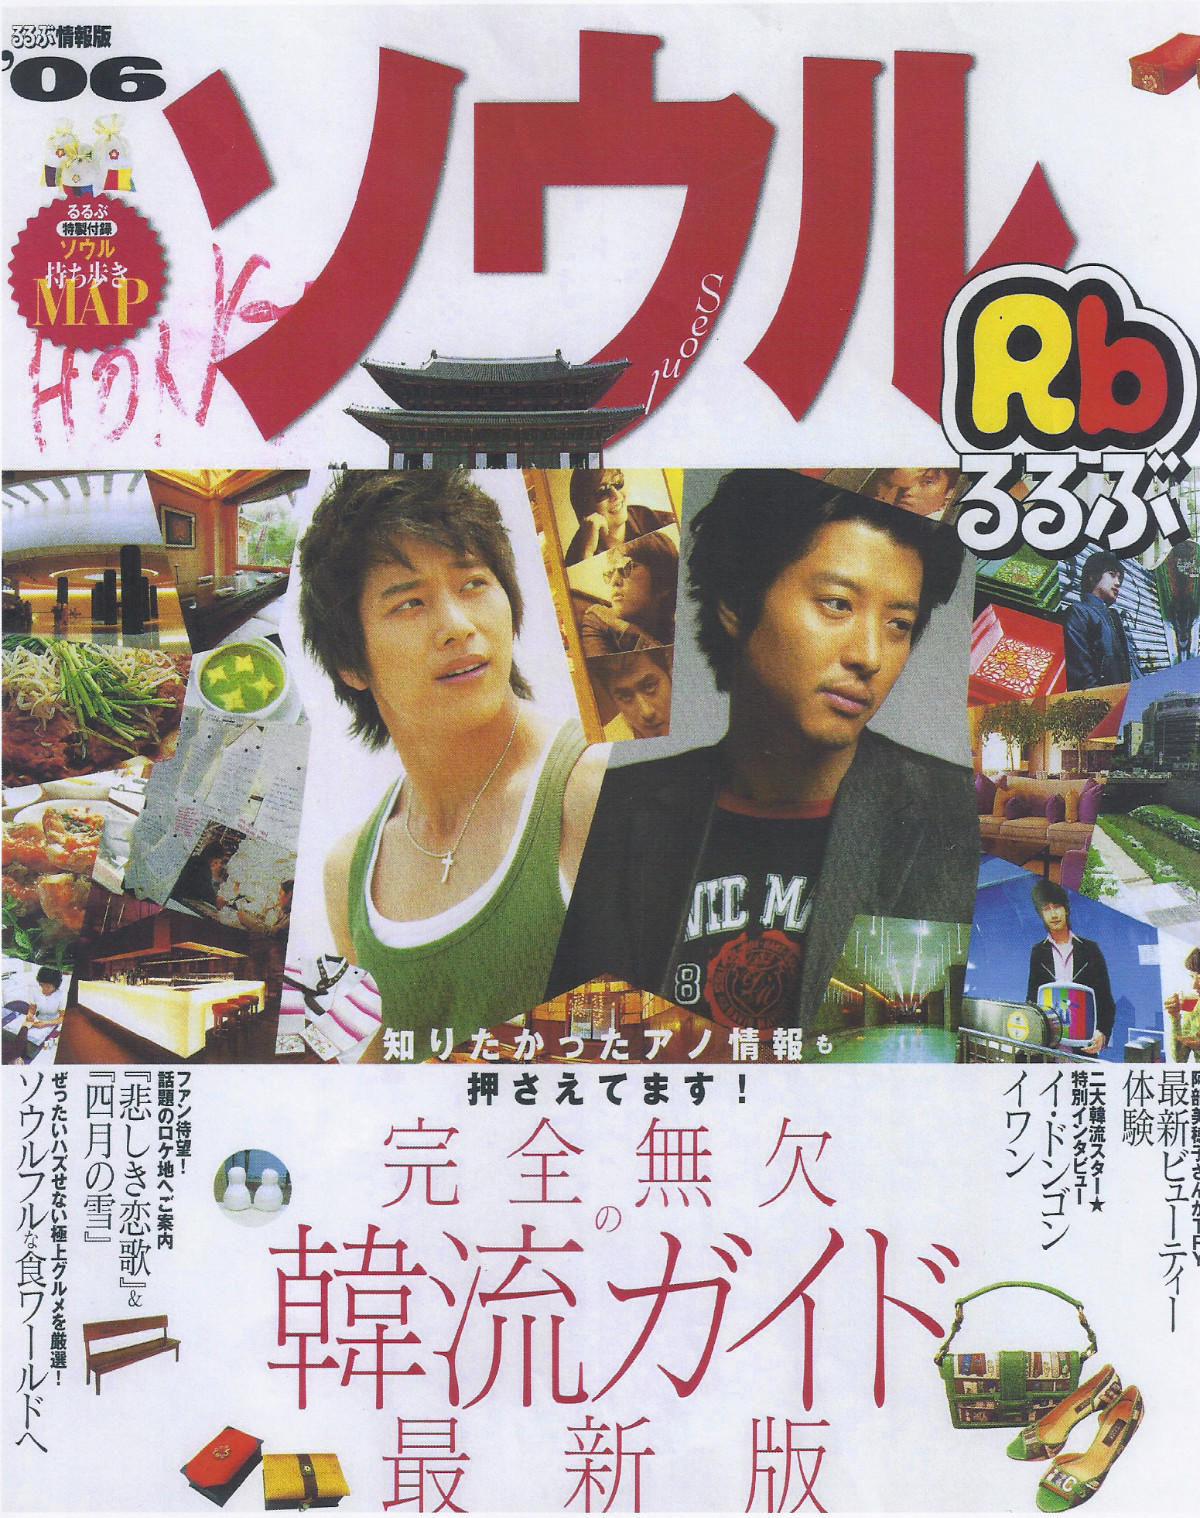 02-1 일본 지화자 소개(루루브 2006_1) 표지.jpg